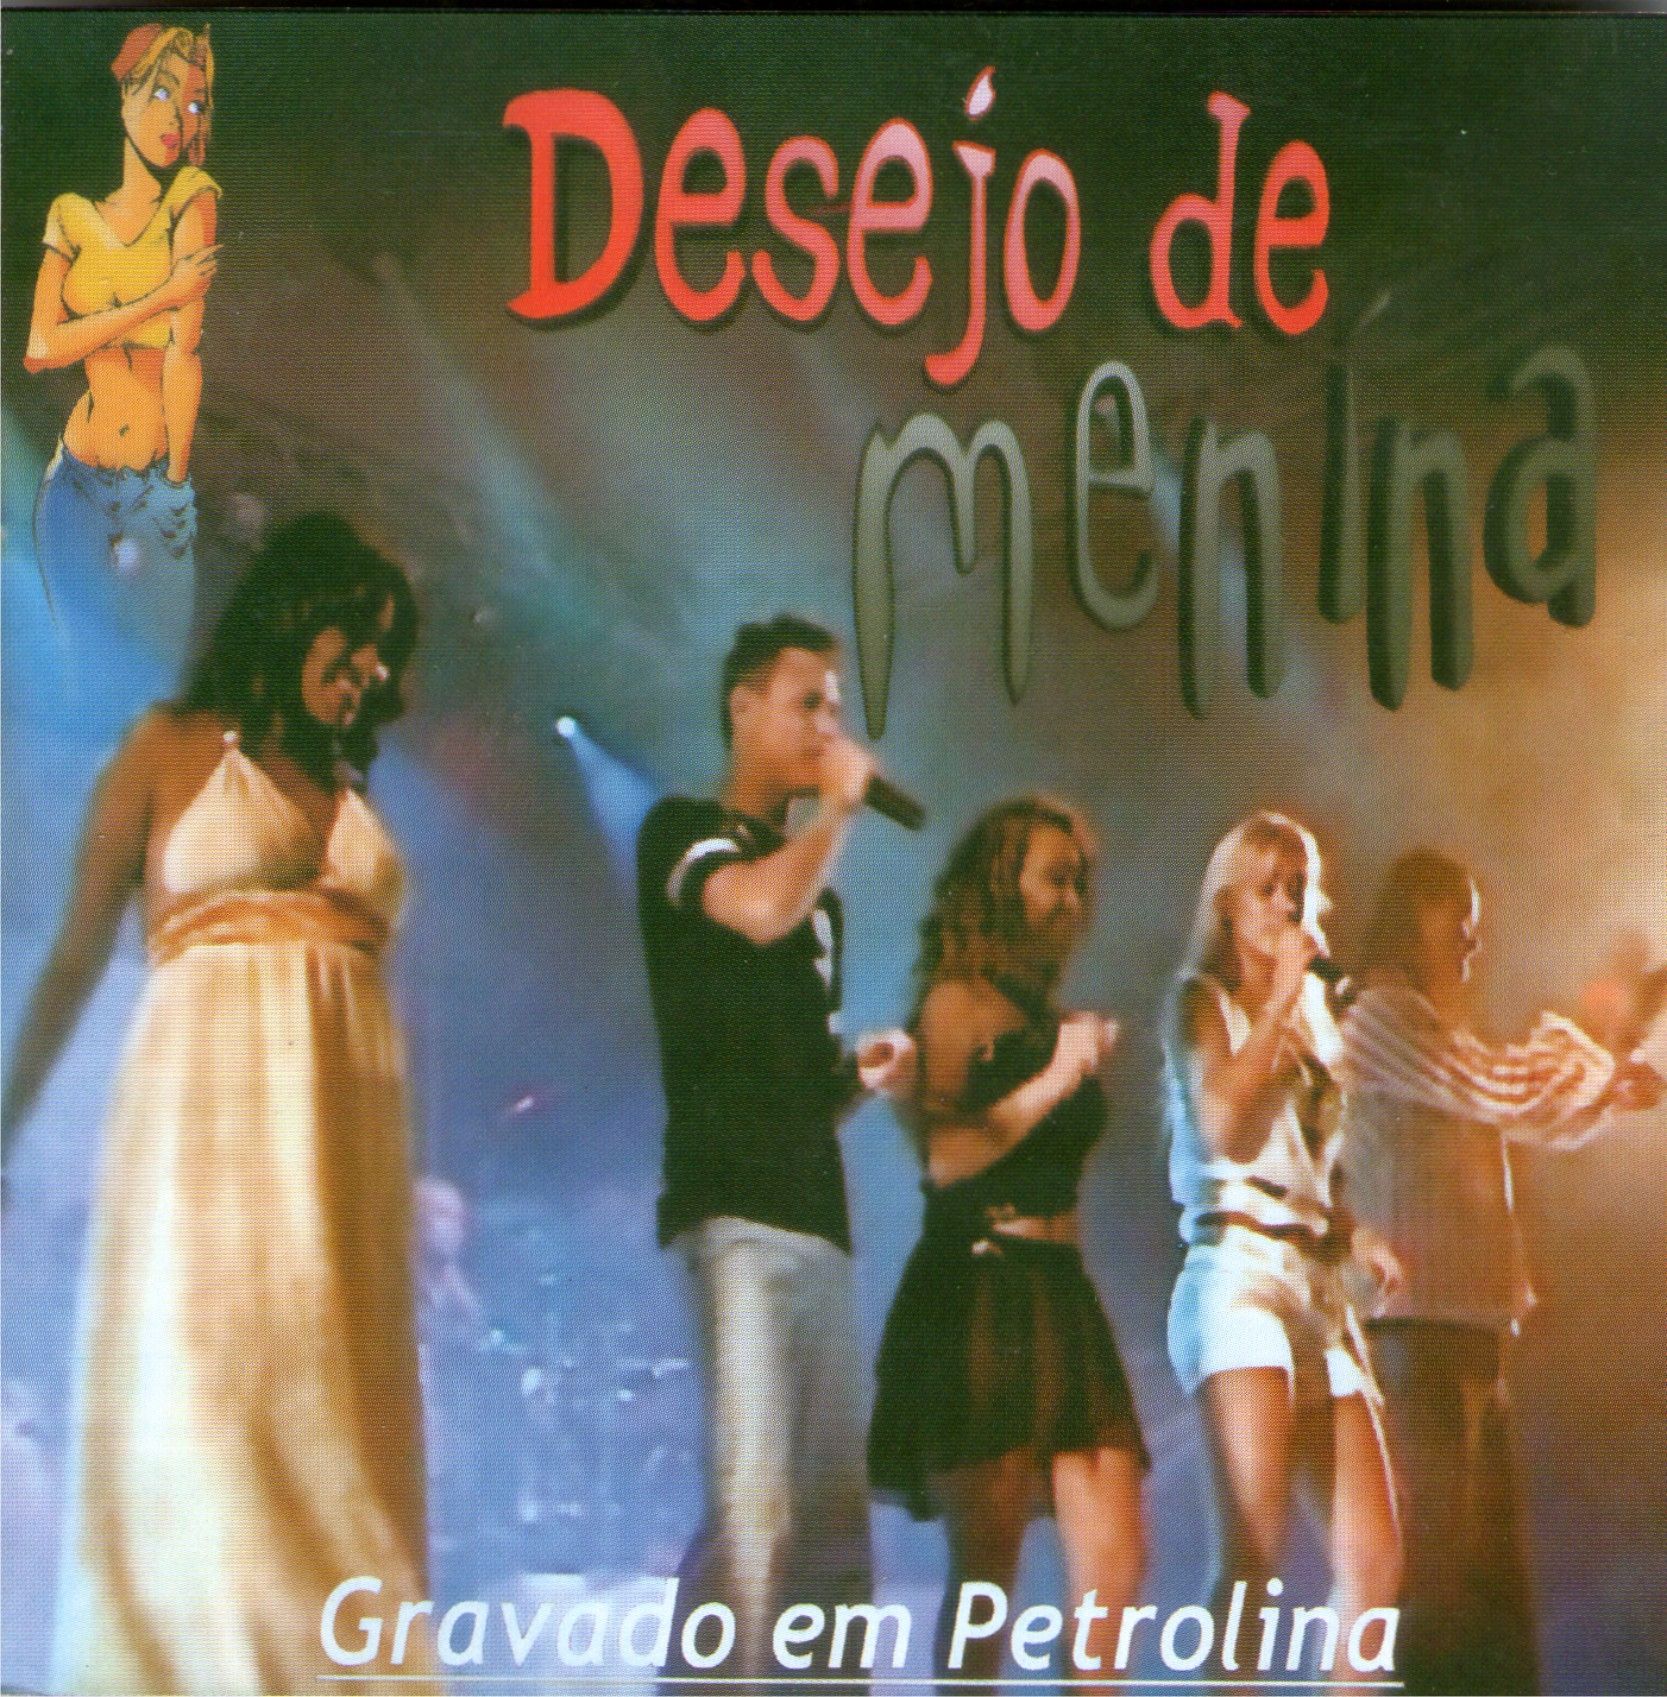 Imagem do álbum Ao Vivo Em Petrolina do(a) artista Desejo de Menina